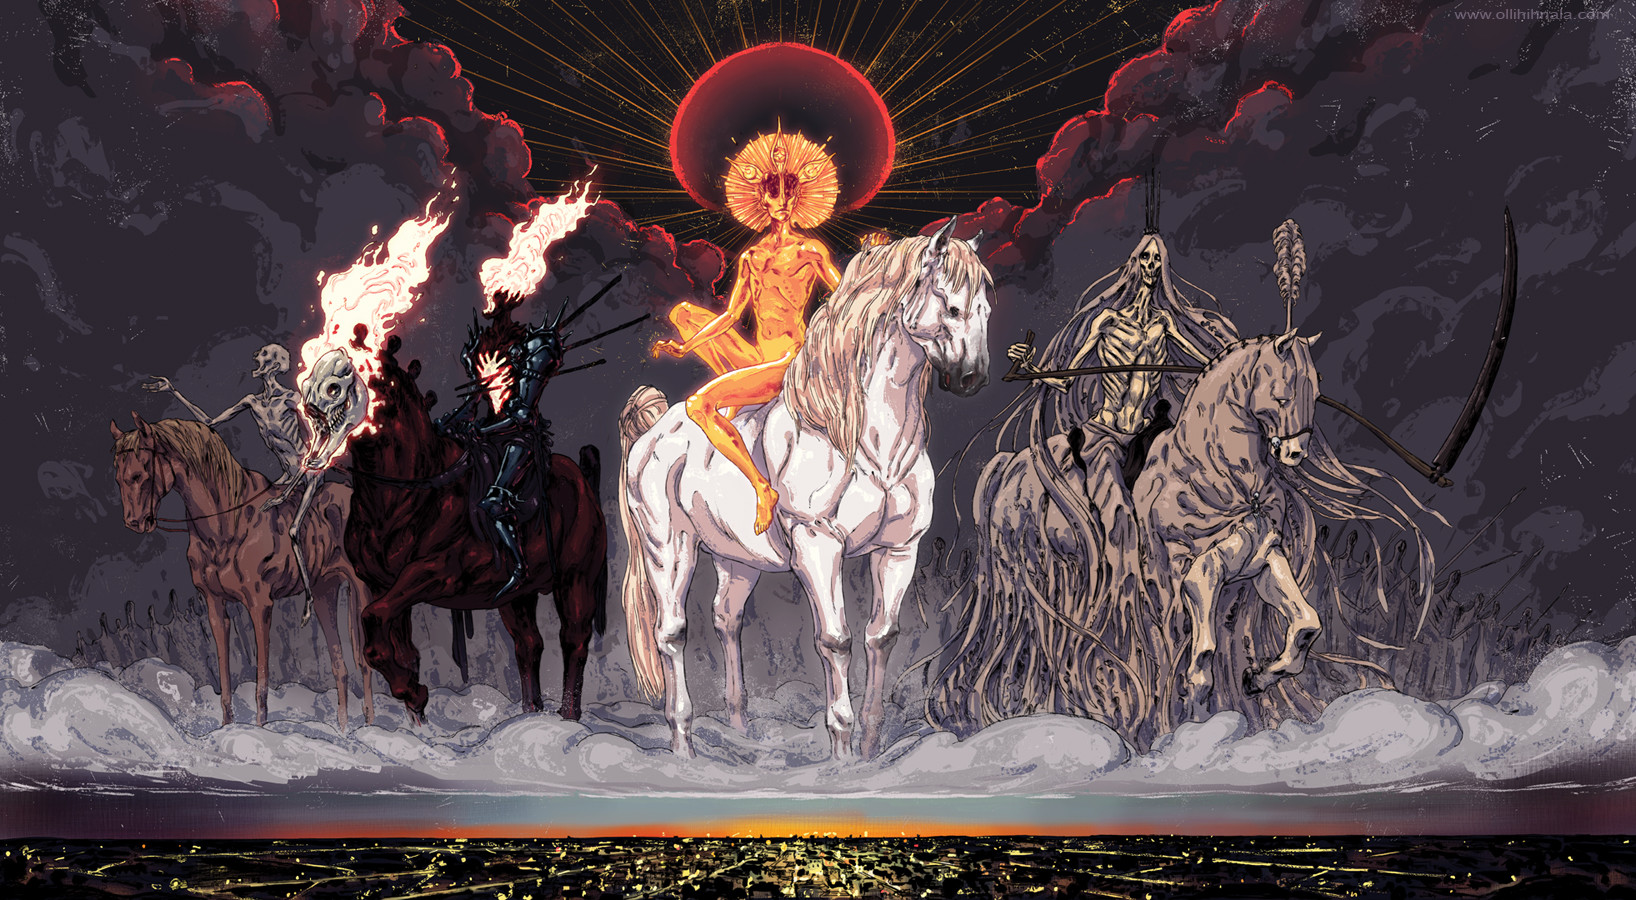 Thiên Thần và Ác Quỷ (Kỳ 6): 'Tứ Kỵ Sĩ Khải Huyền' - Bộ tứ quyền năng mang đến ngày tận thế